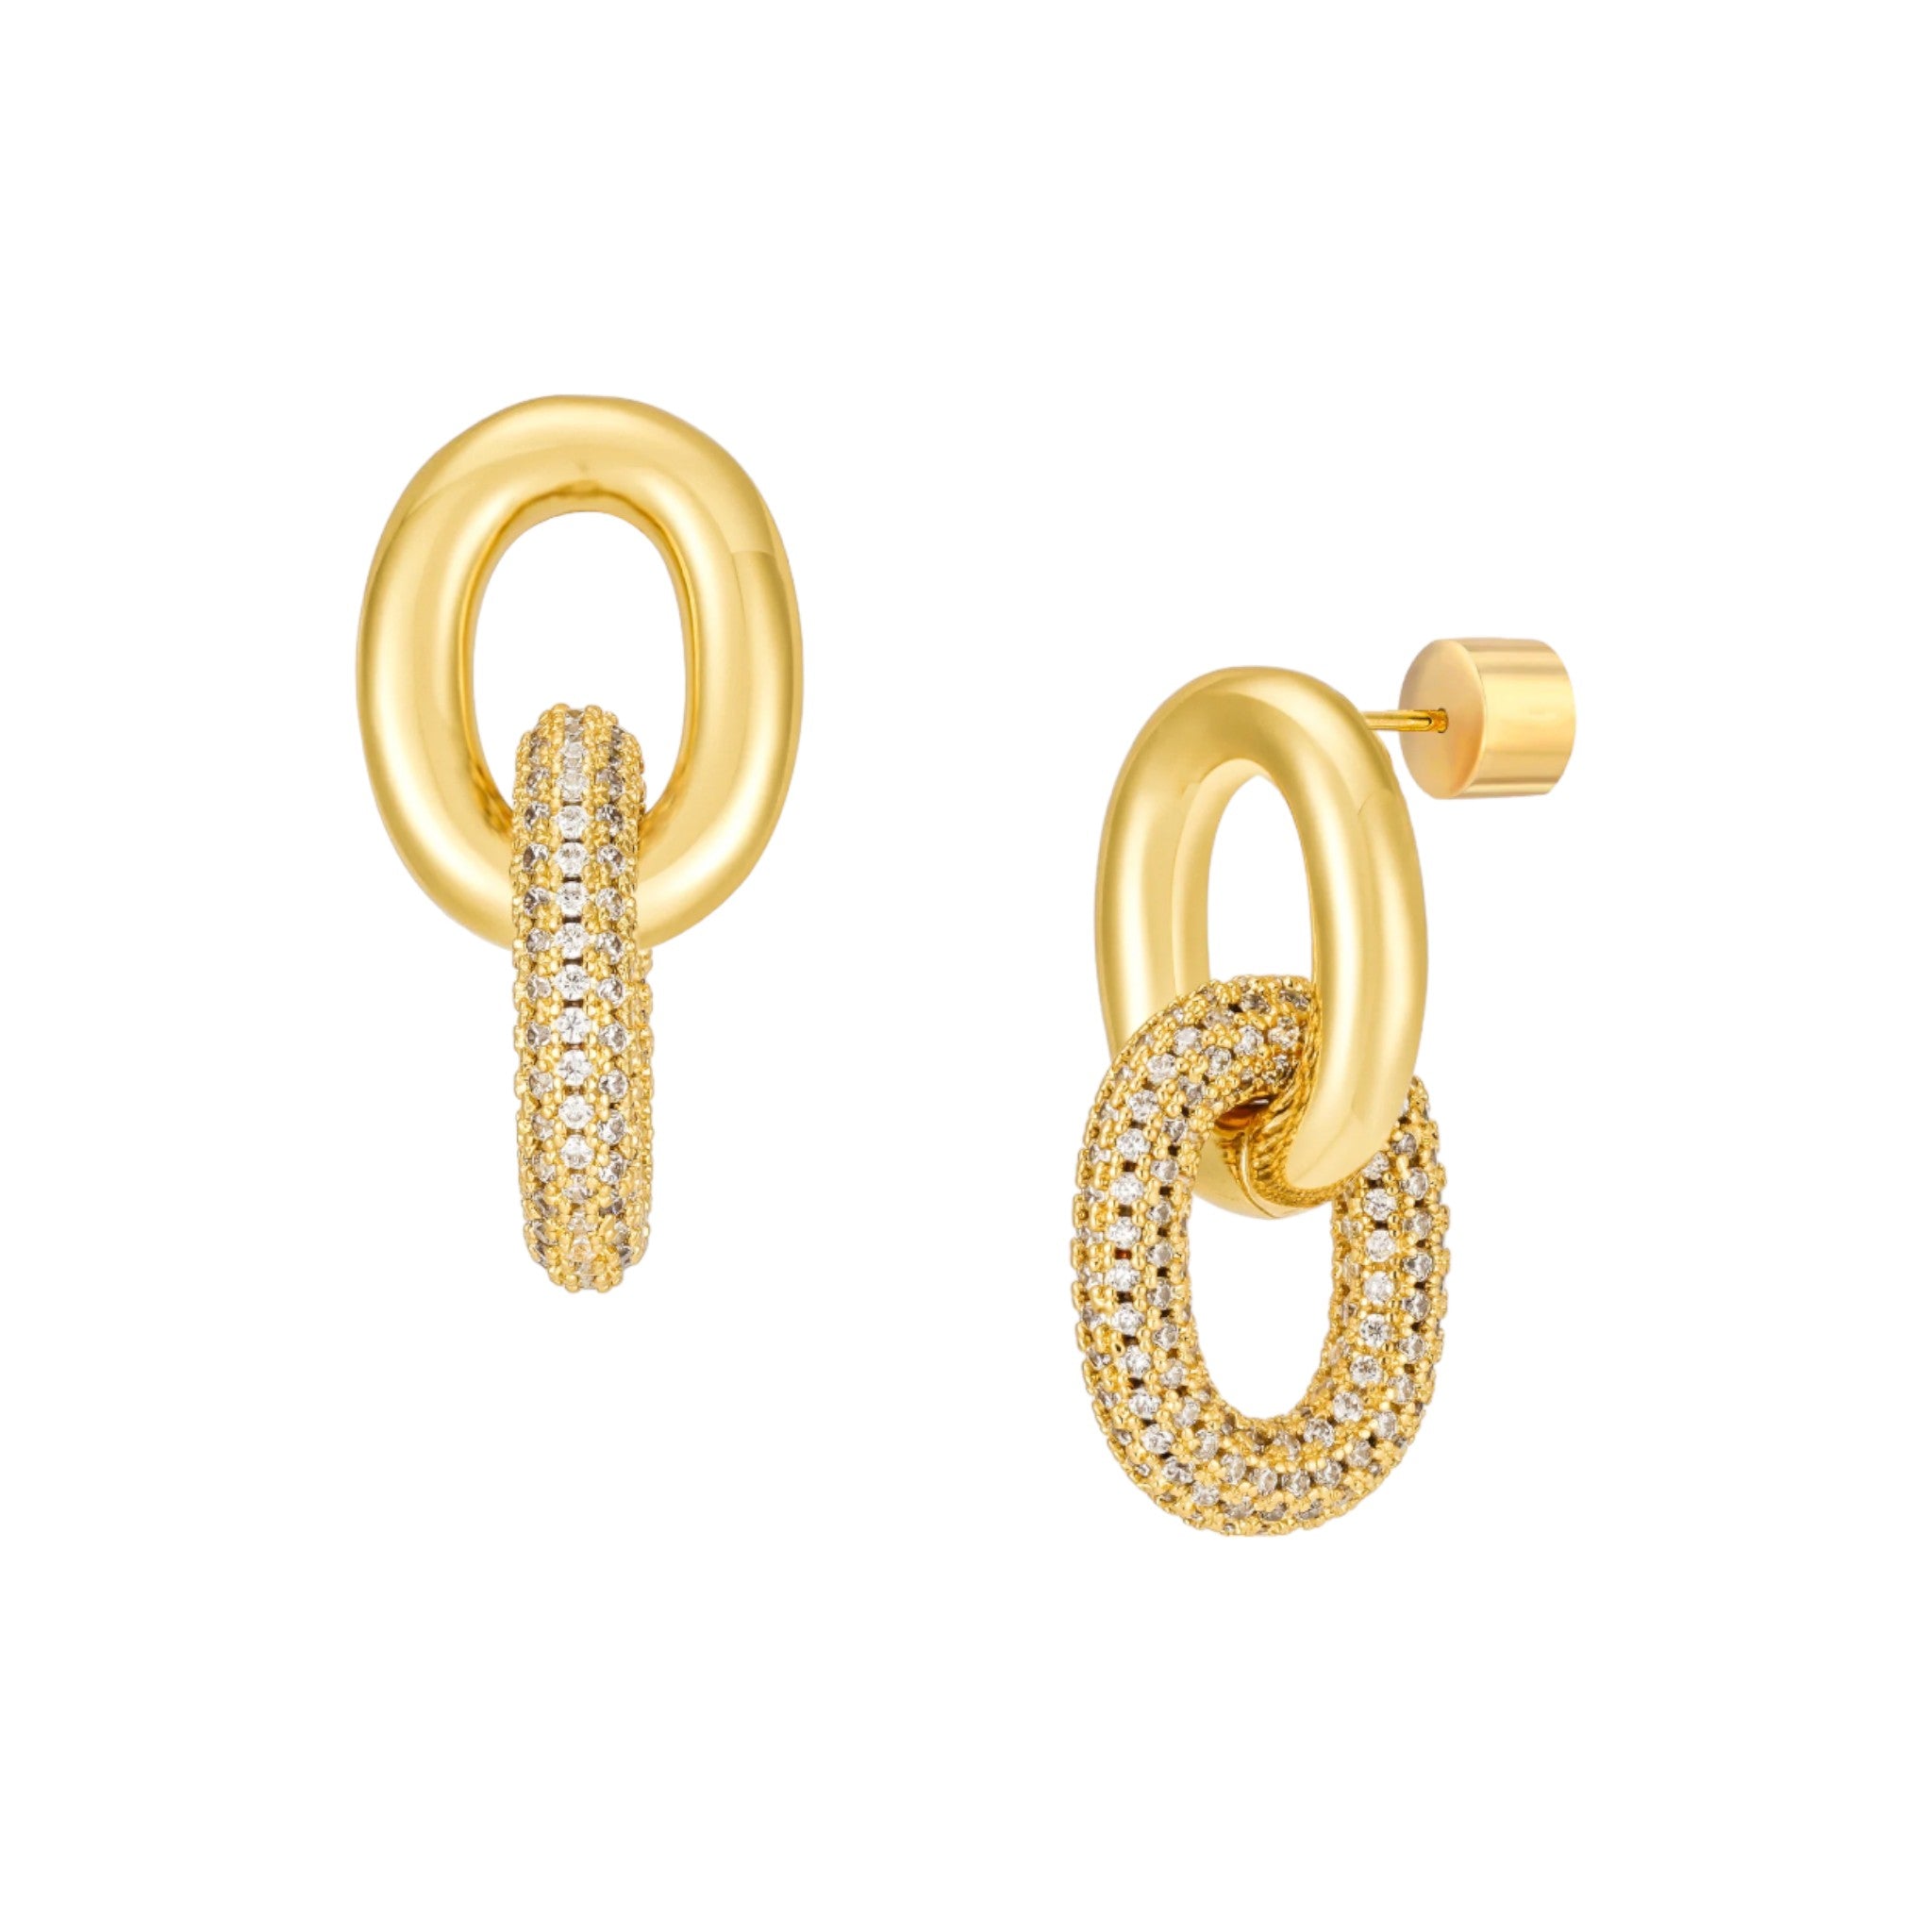 Mod + Jo - Pave Zoe Link Earrings - Gold Plate